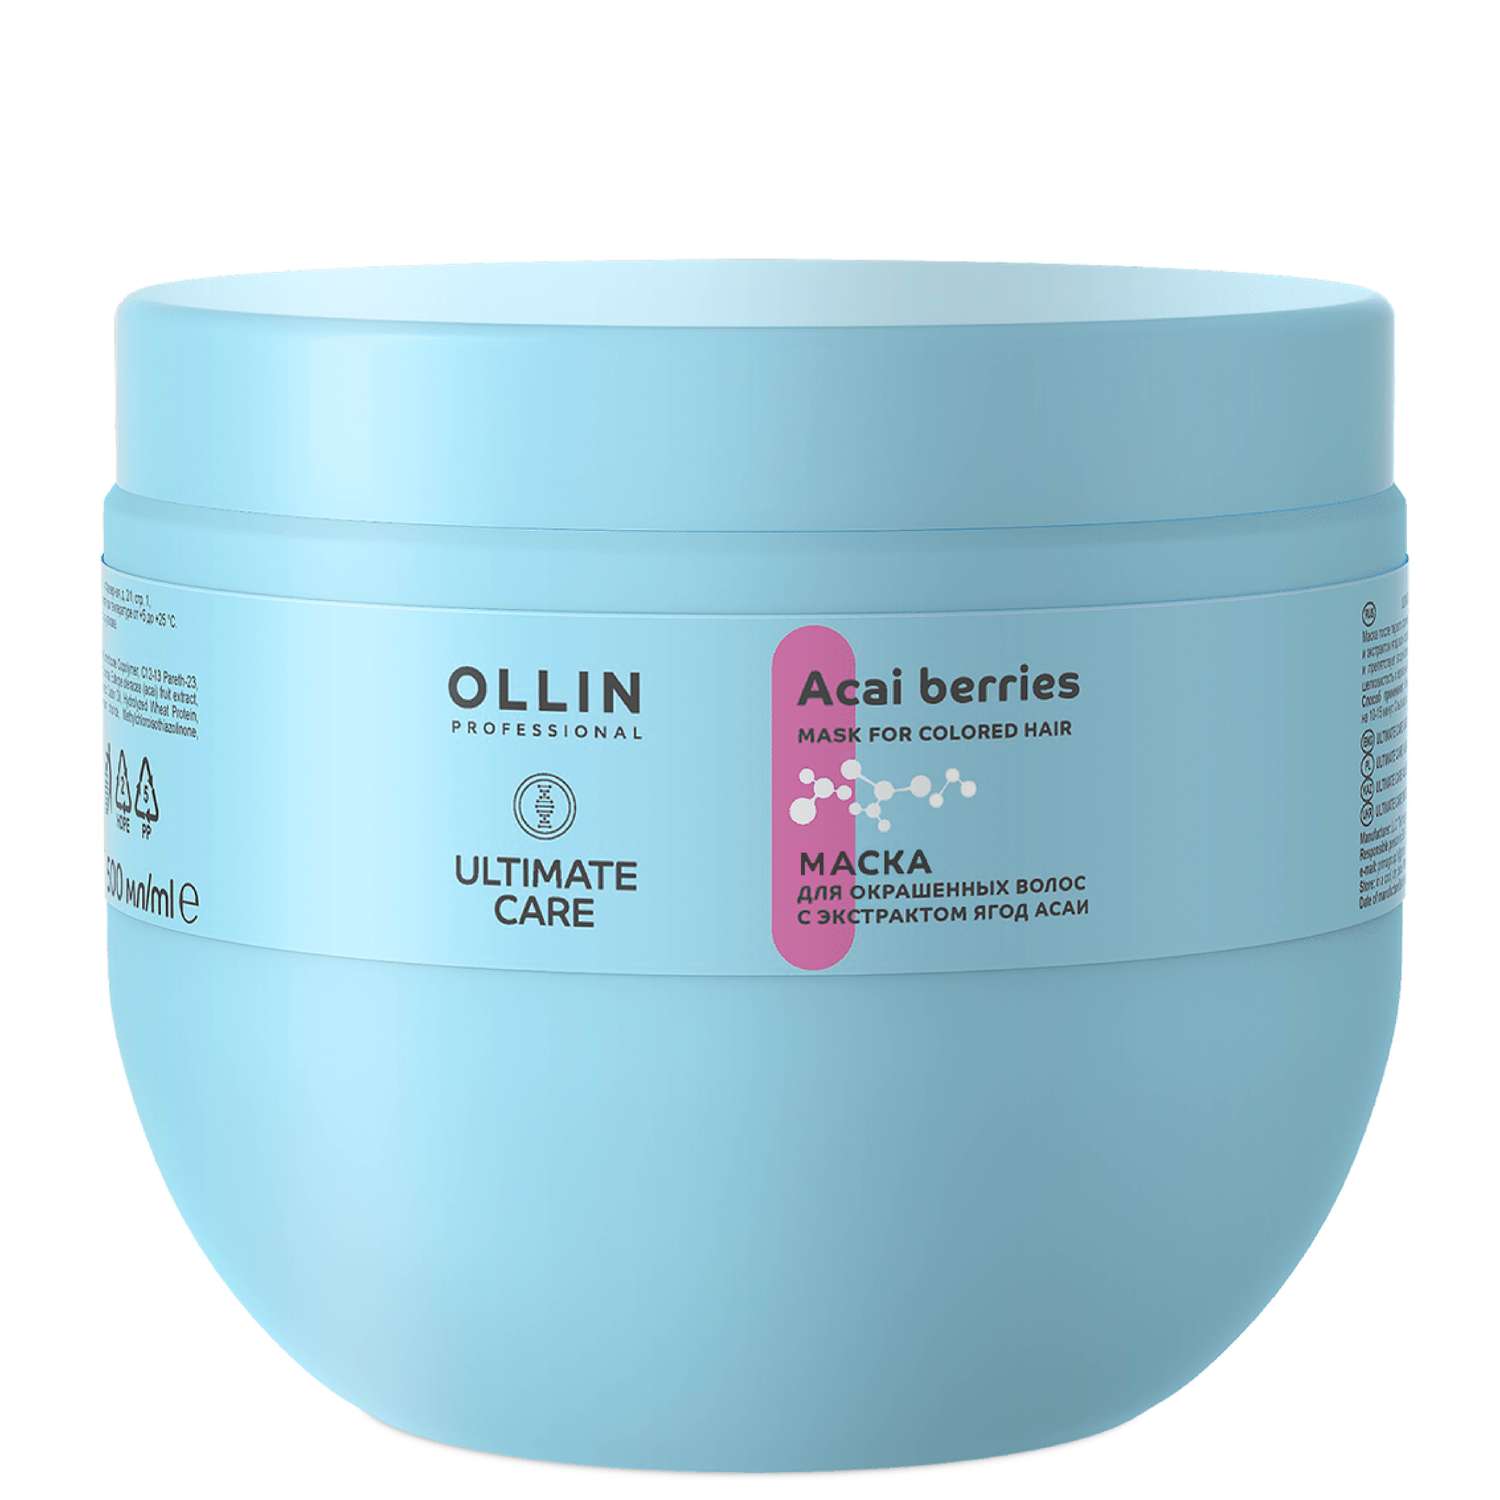 Маска Ollin ultimate care для окрашенных волос с экстрактом ягод асаи 500 мл - фото 1